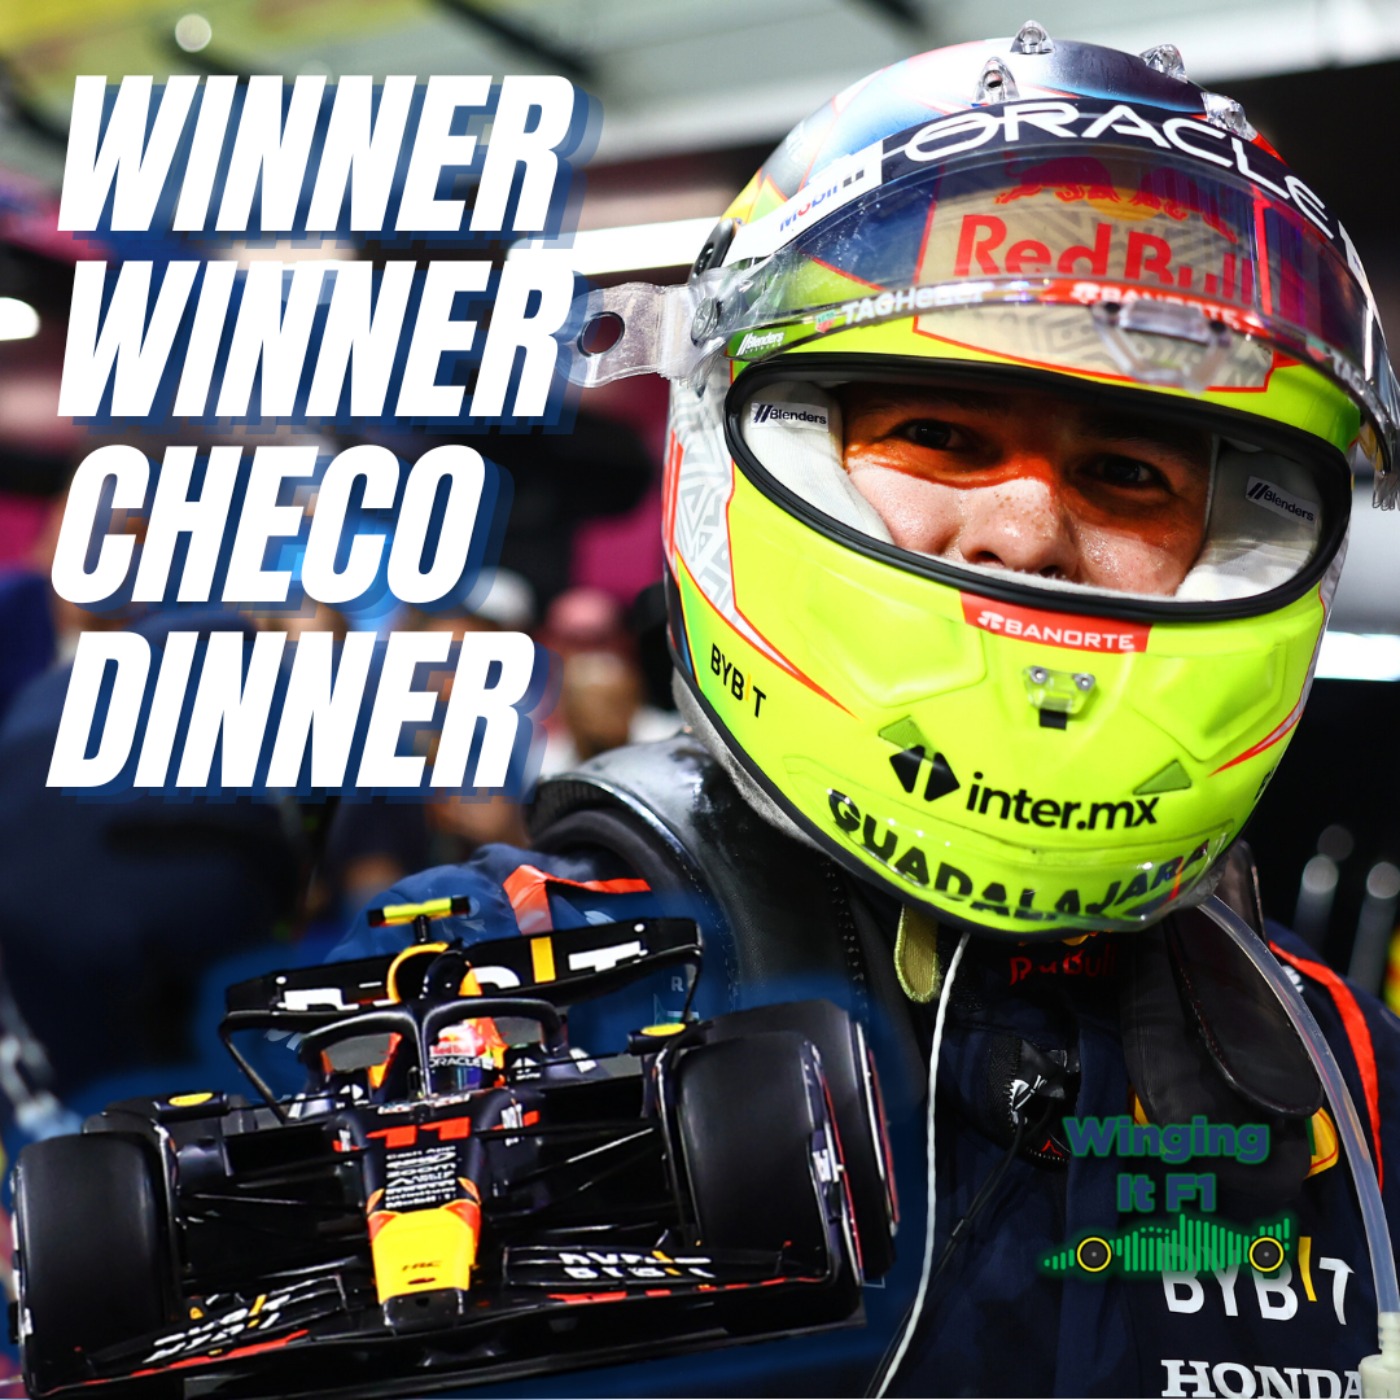 cover art for WINNER WINNER CHECO DINNER 🇲🇽 Saudi Arabian GP Reaction  🇸🇦